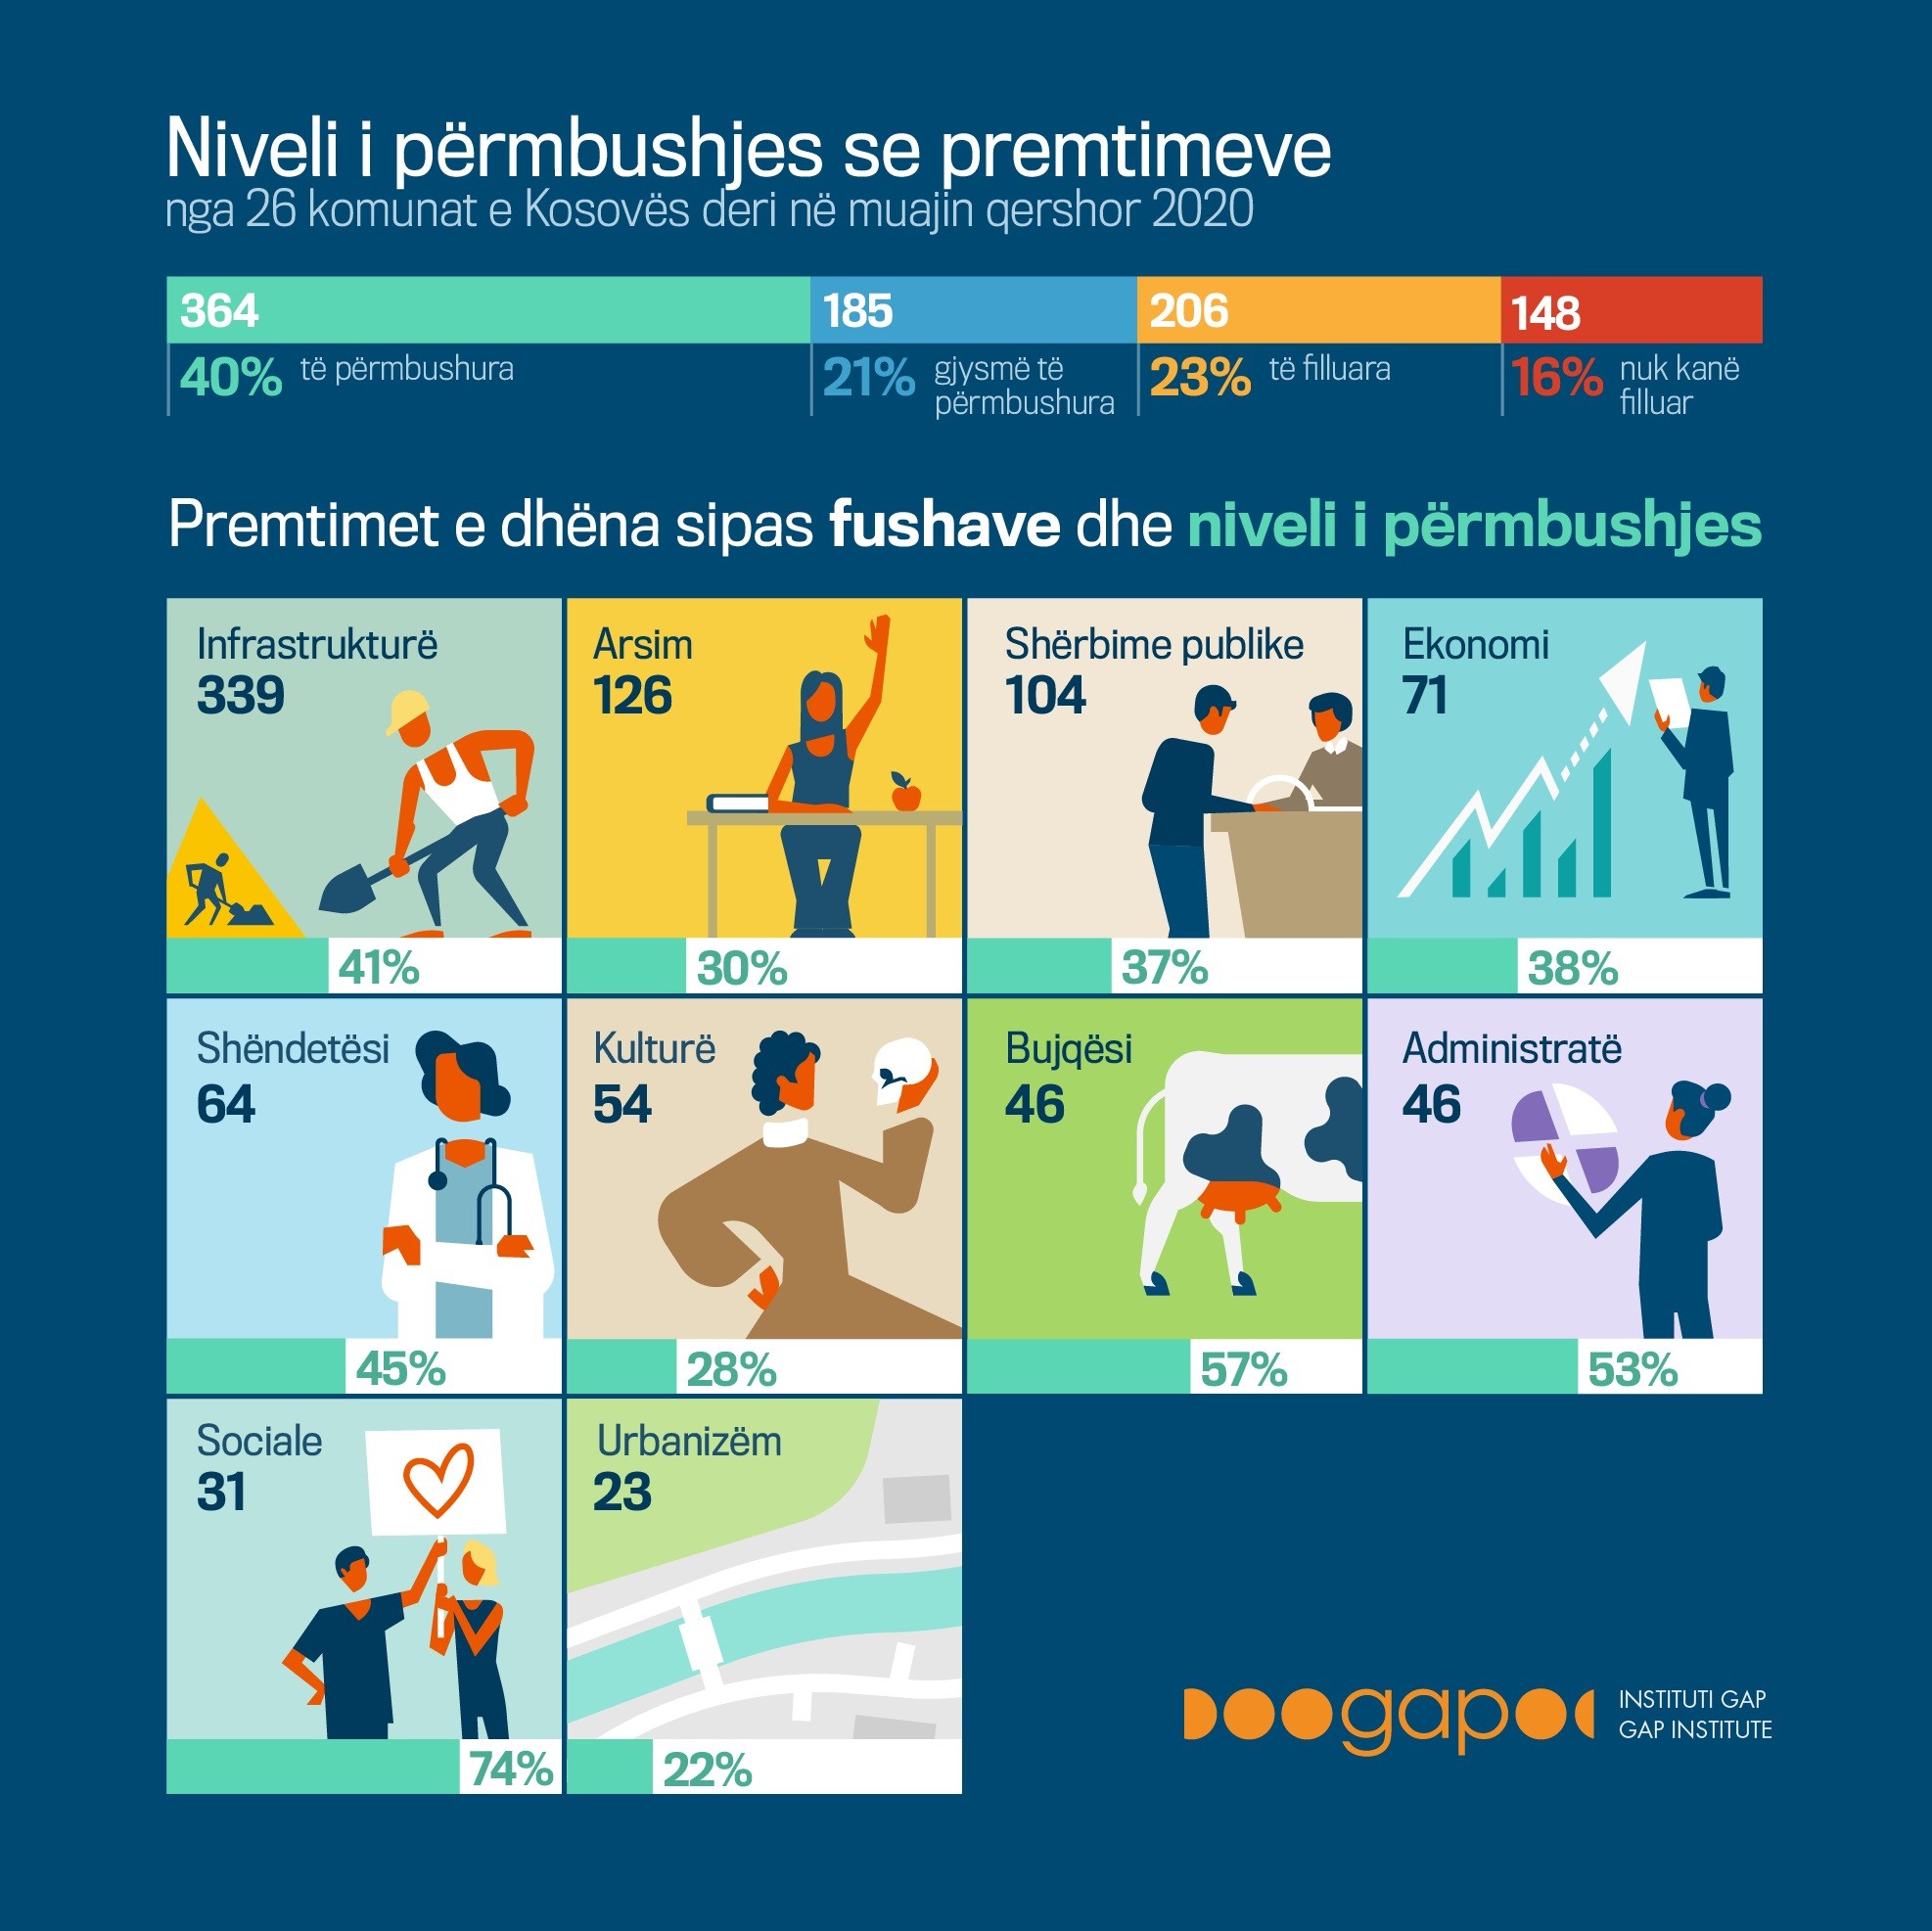 Nga 903 premtime komunat kanë përmbushur 364 premtime